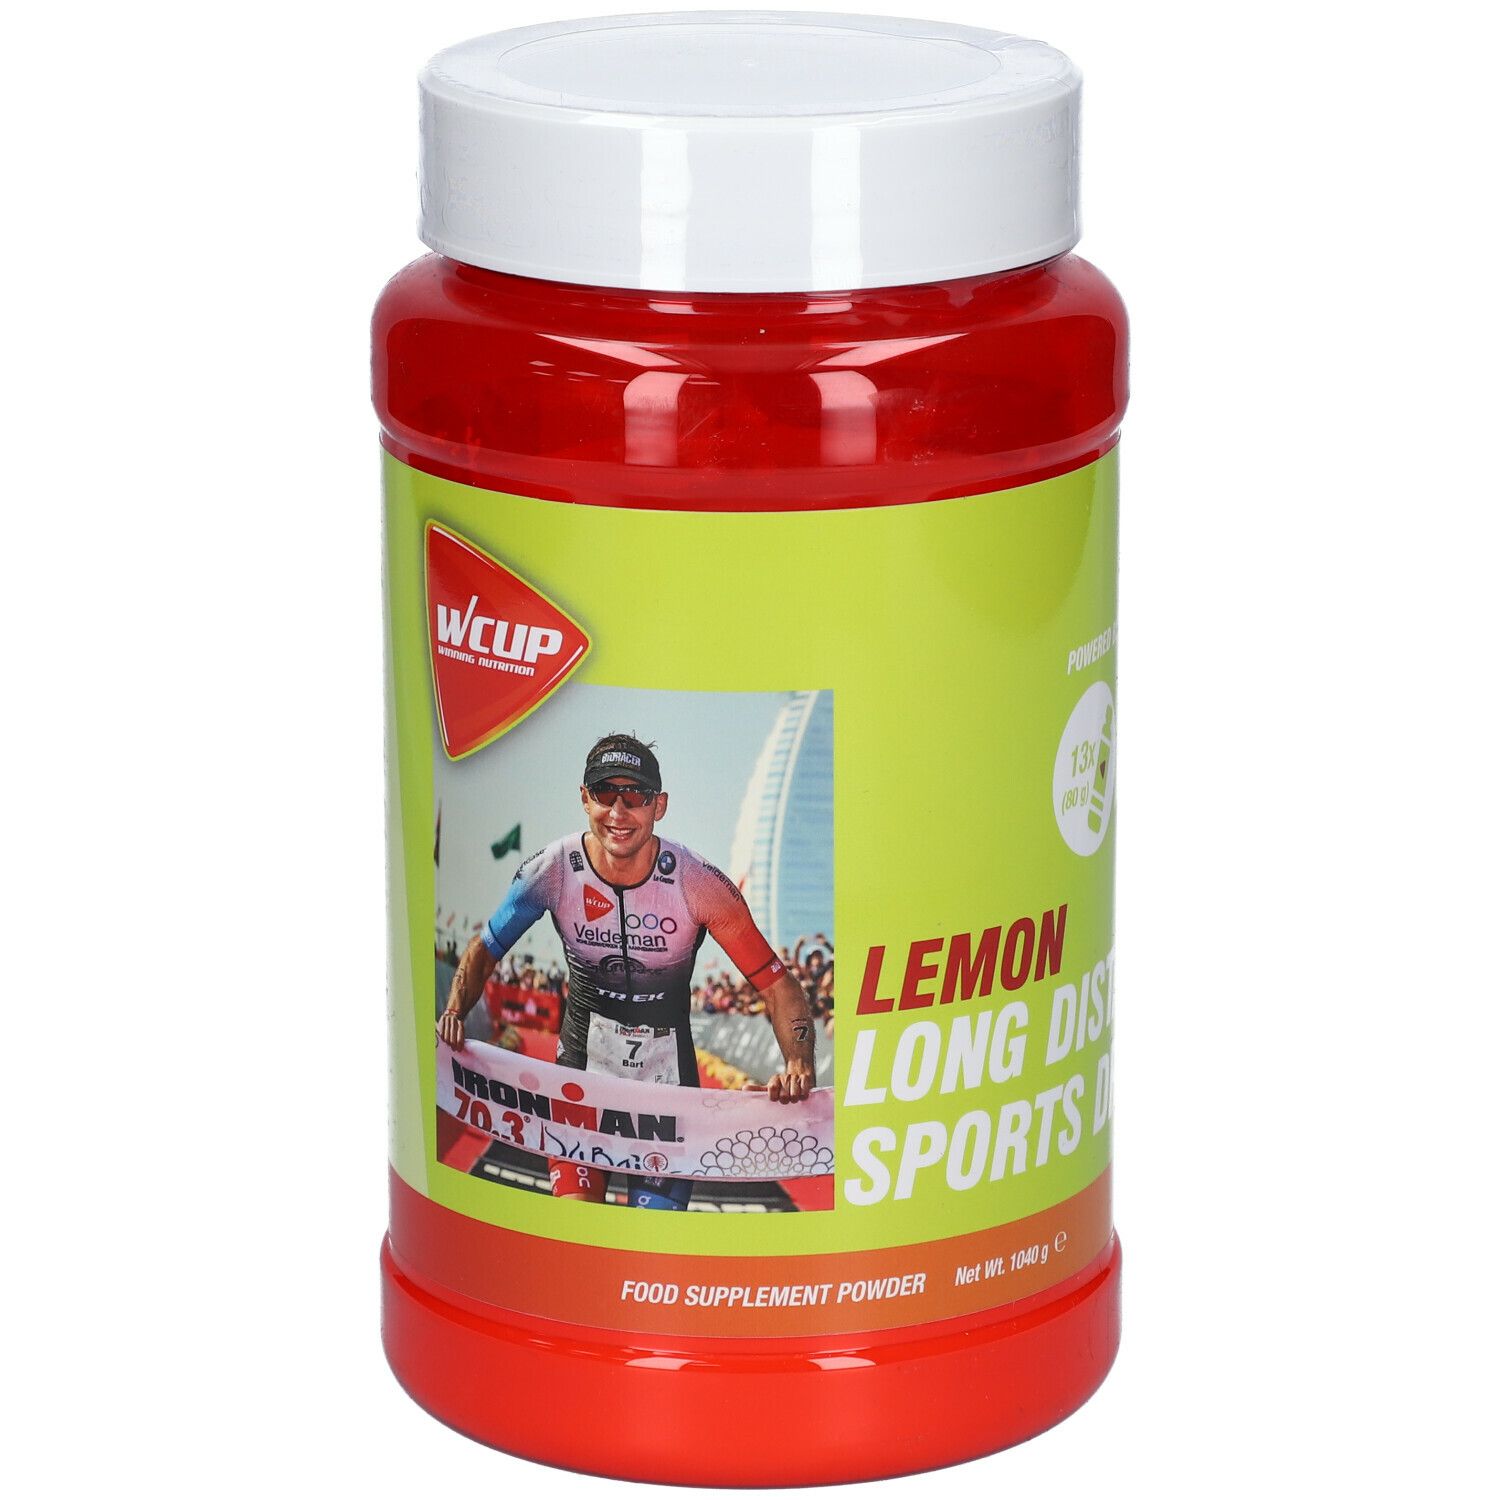 WCUP Long Distance Sport Lemon